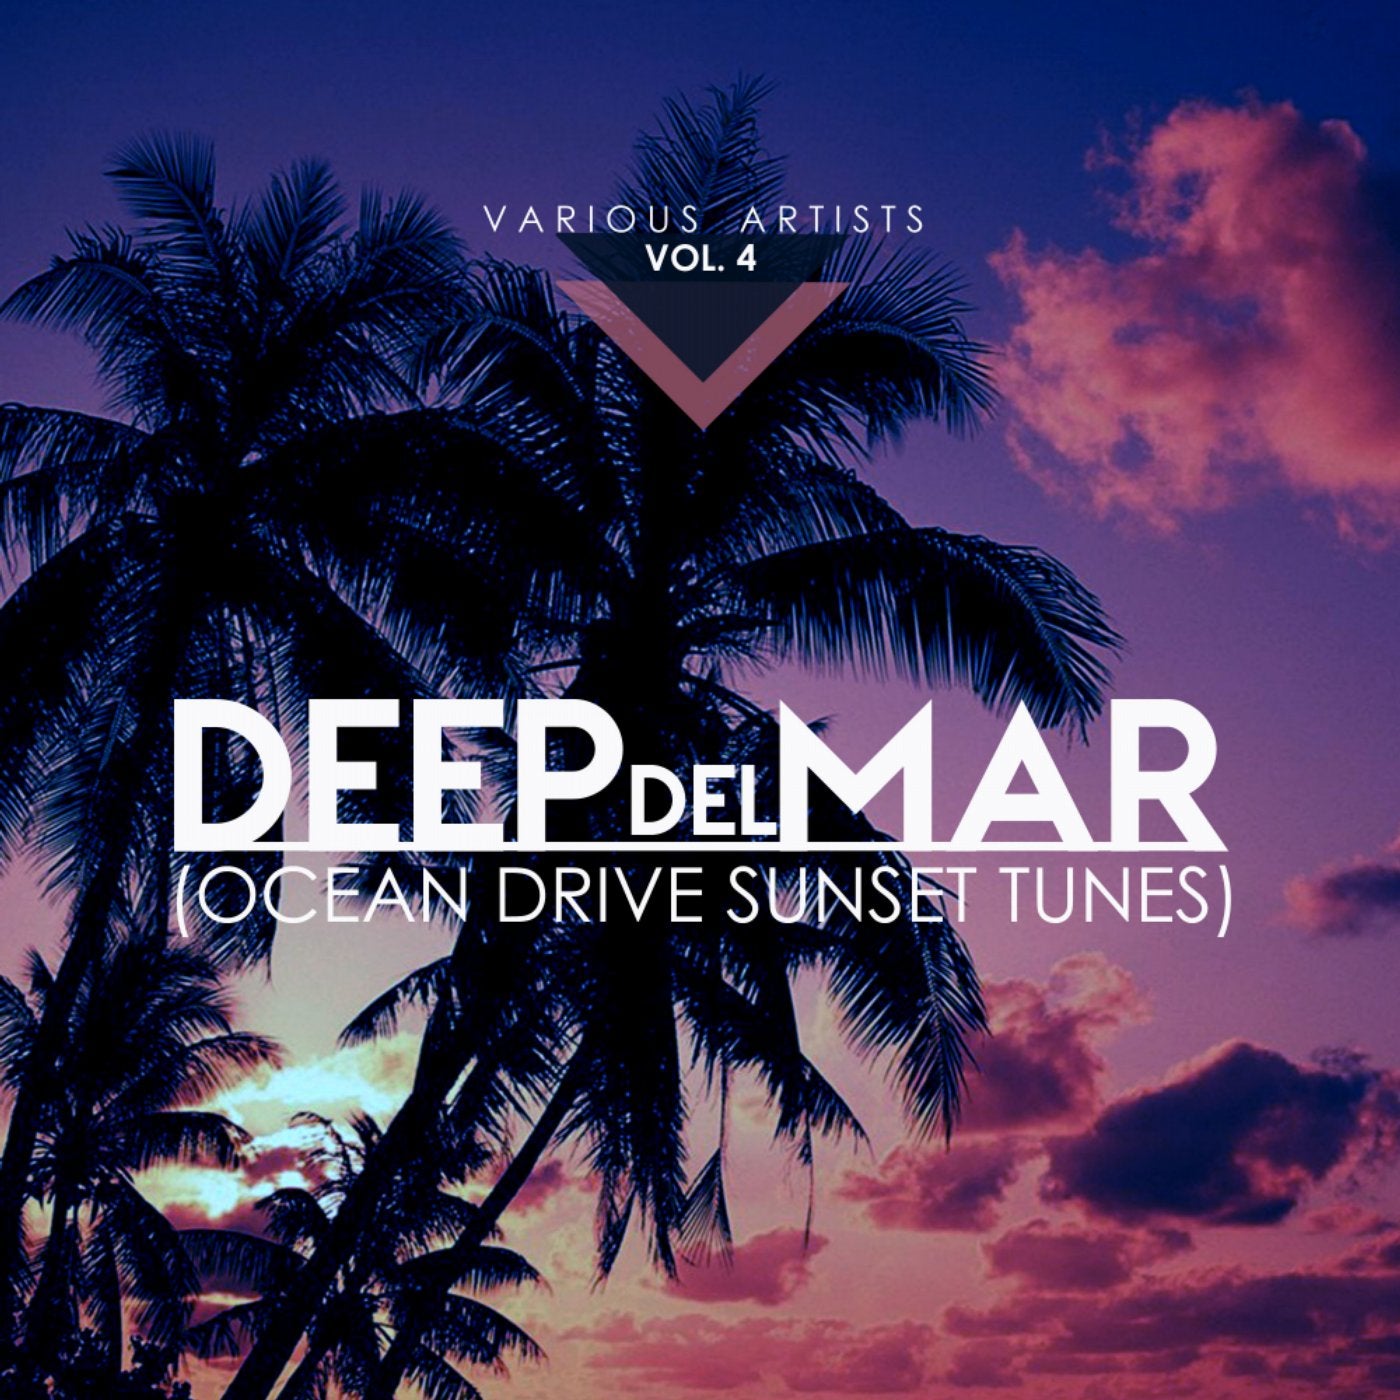 Deep Del Mar (Ocean Drive Sunset Tunes), Vol. 4